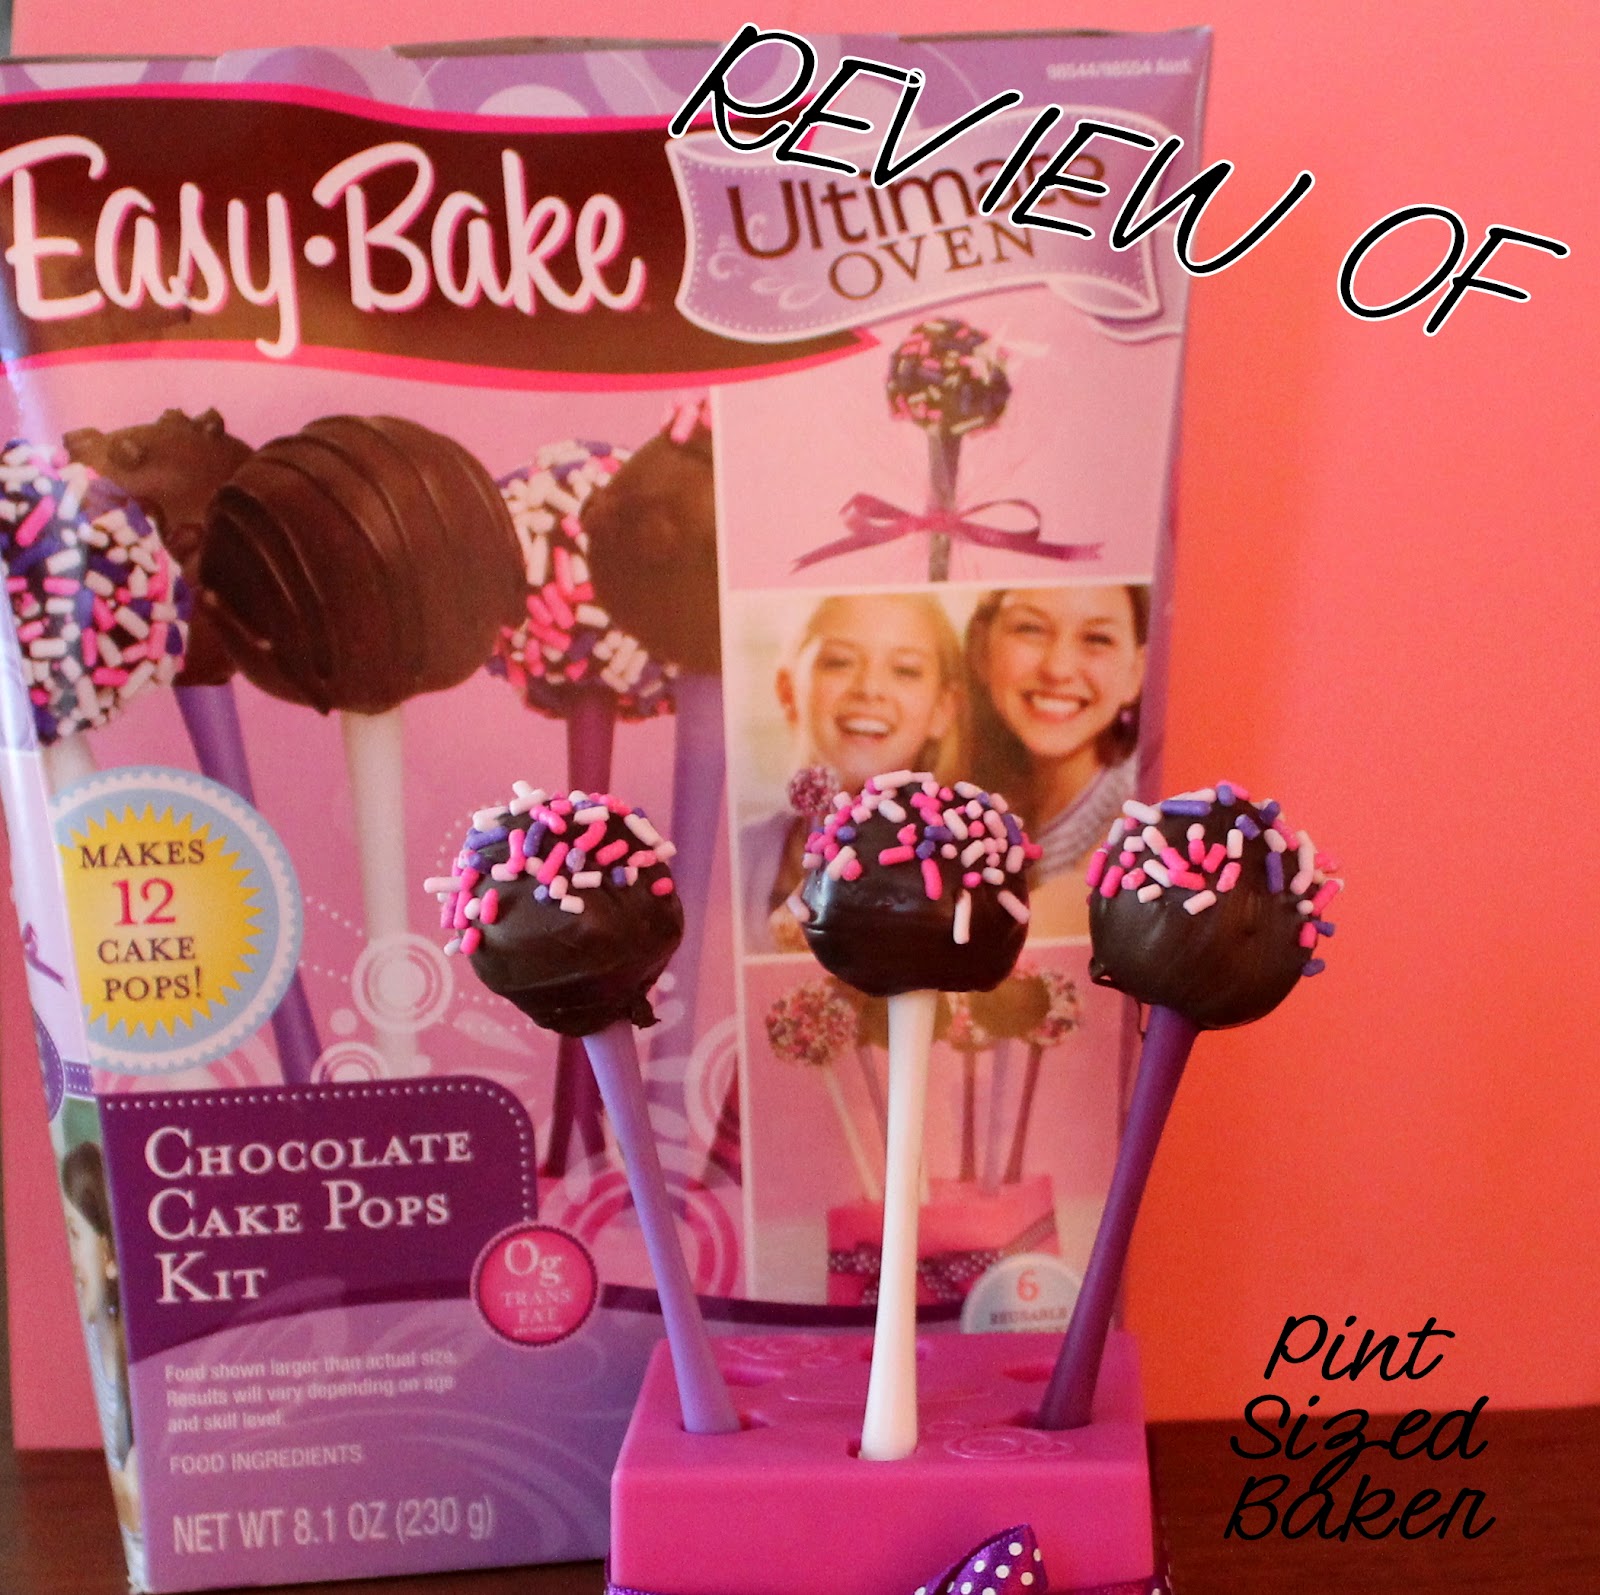 Review of Easy Bake Oven Cake Pop Kit Pint Sized Baker